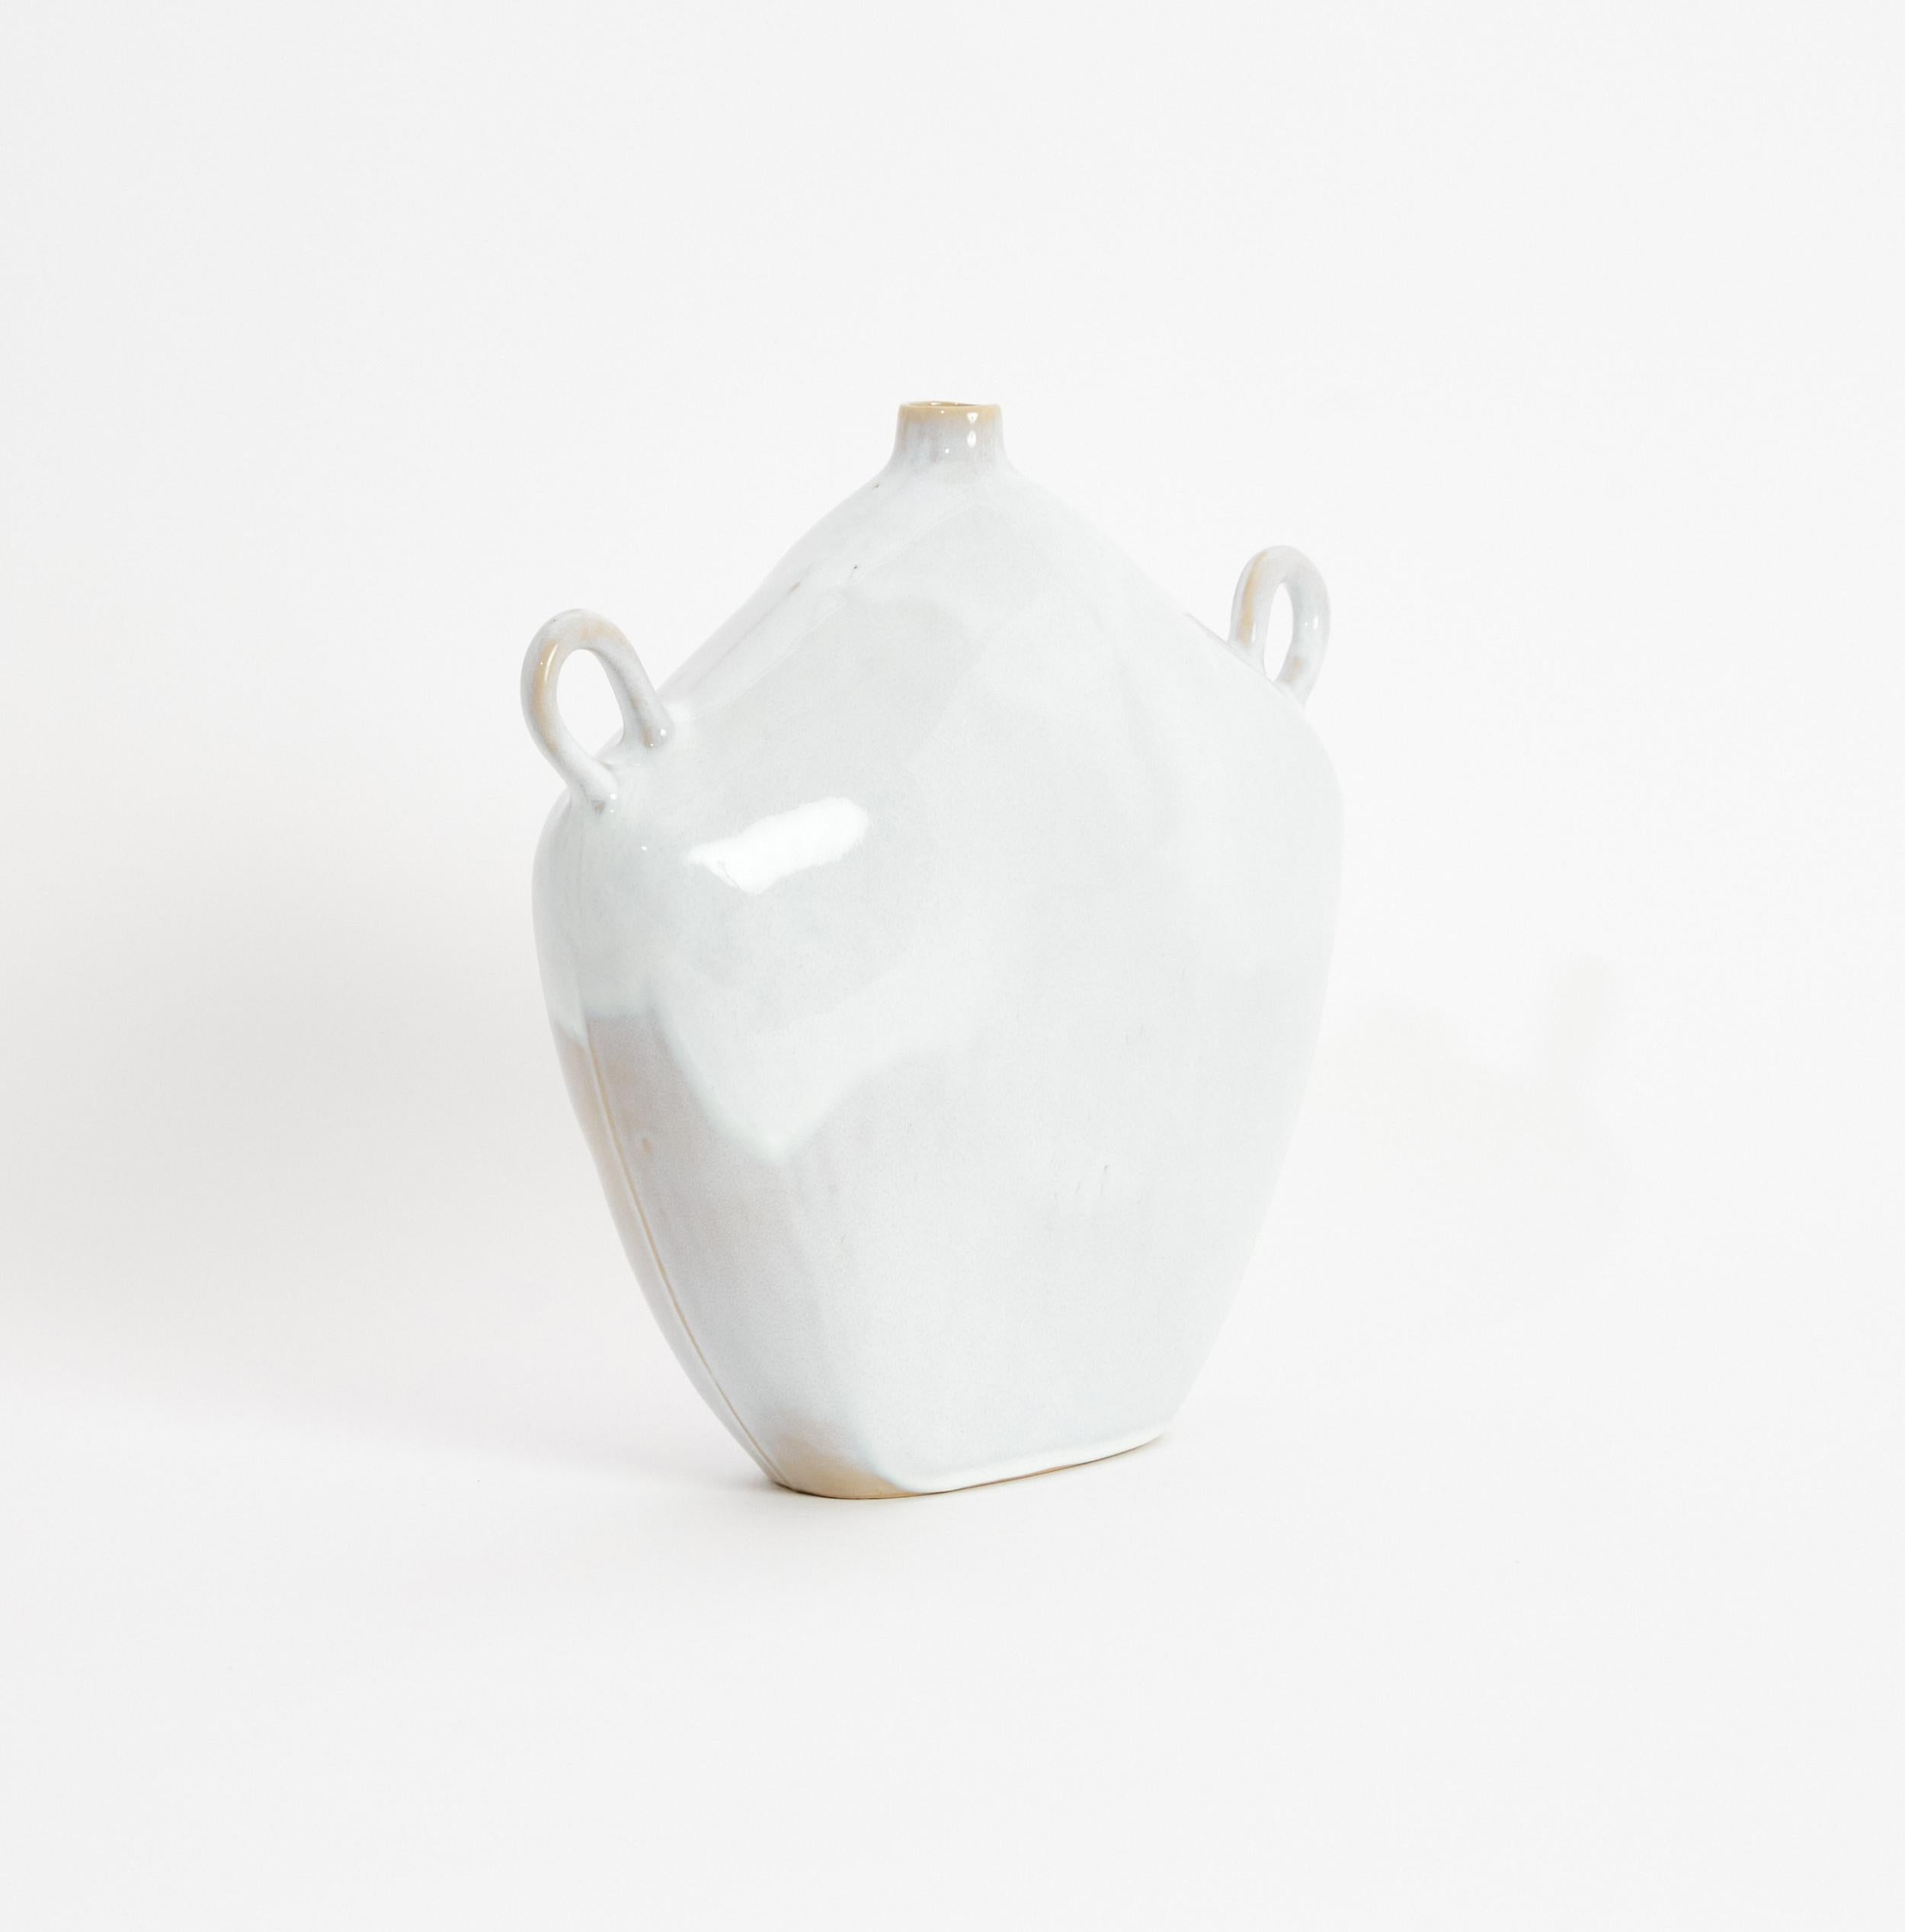 Vase Maria en blanc brillant 
Conçu par Project 213A en 2020
Grès cérame fait à la main

Ce vase, inspiré de la période gréco-romaine, a une apparence intemporelle et est fini avec une glaçure brillante texturée contemporaine. Chaque pièce